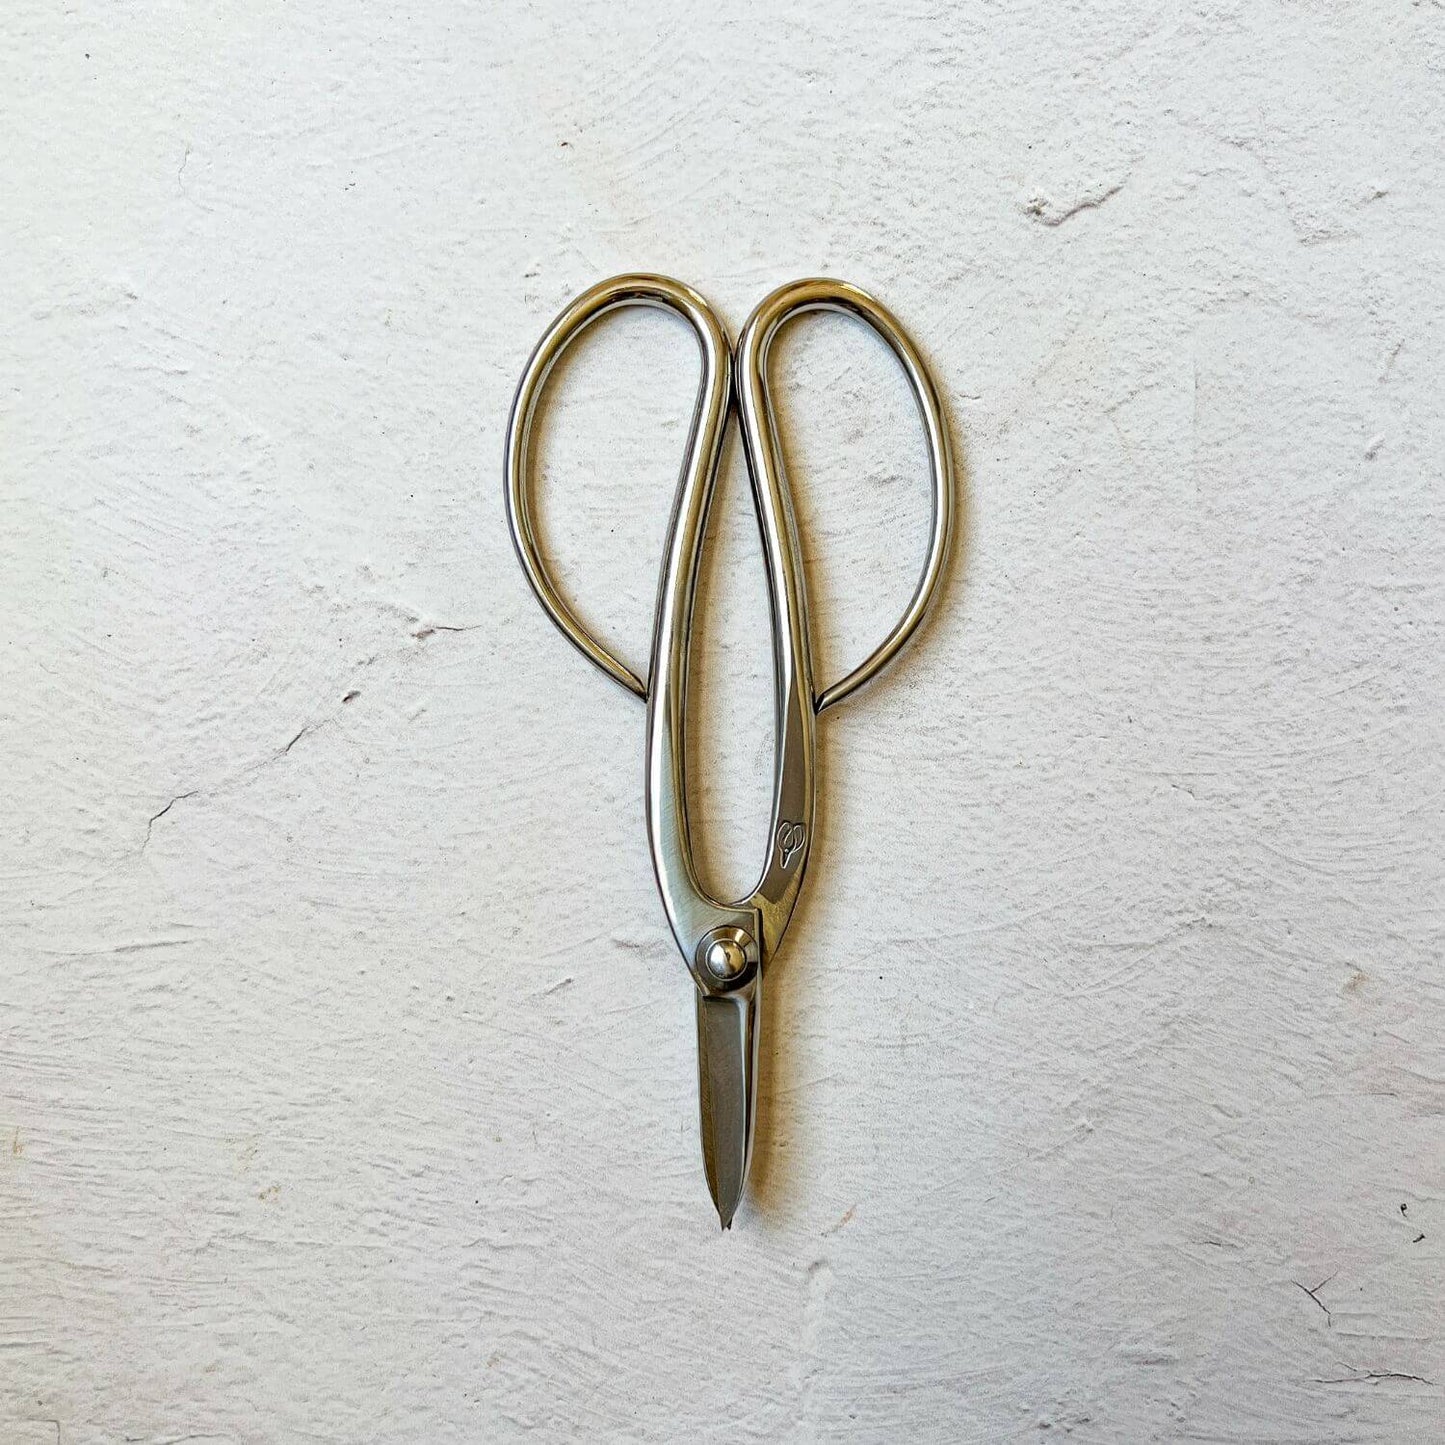 Kitchen Scissors by Toyama Hamono